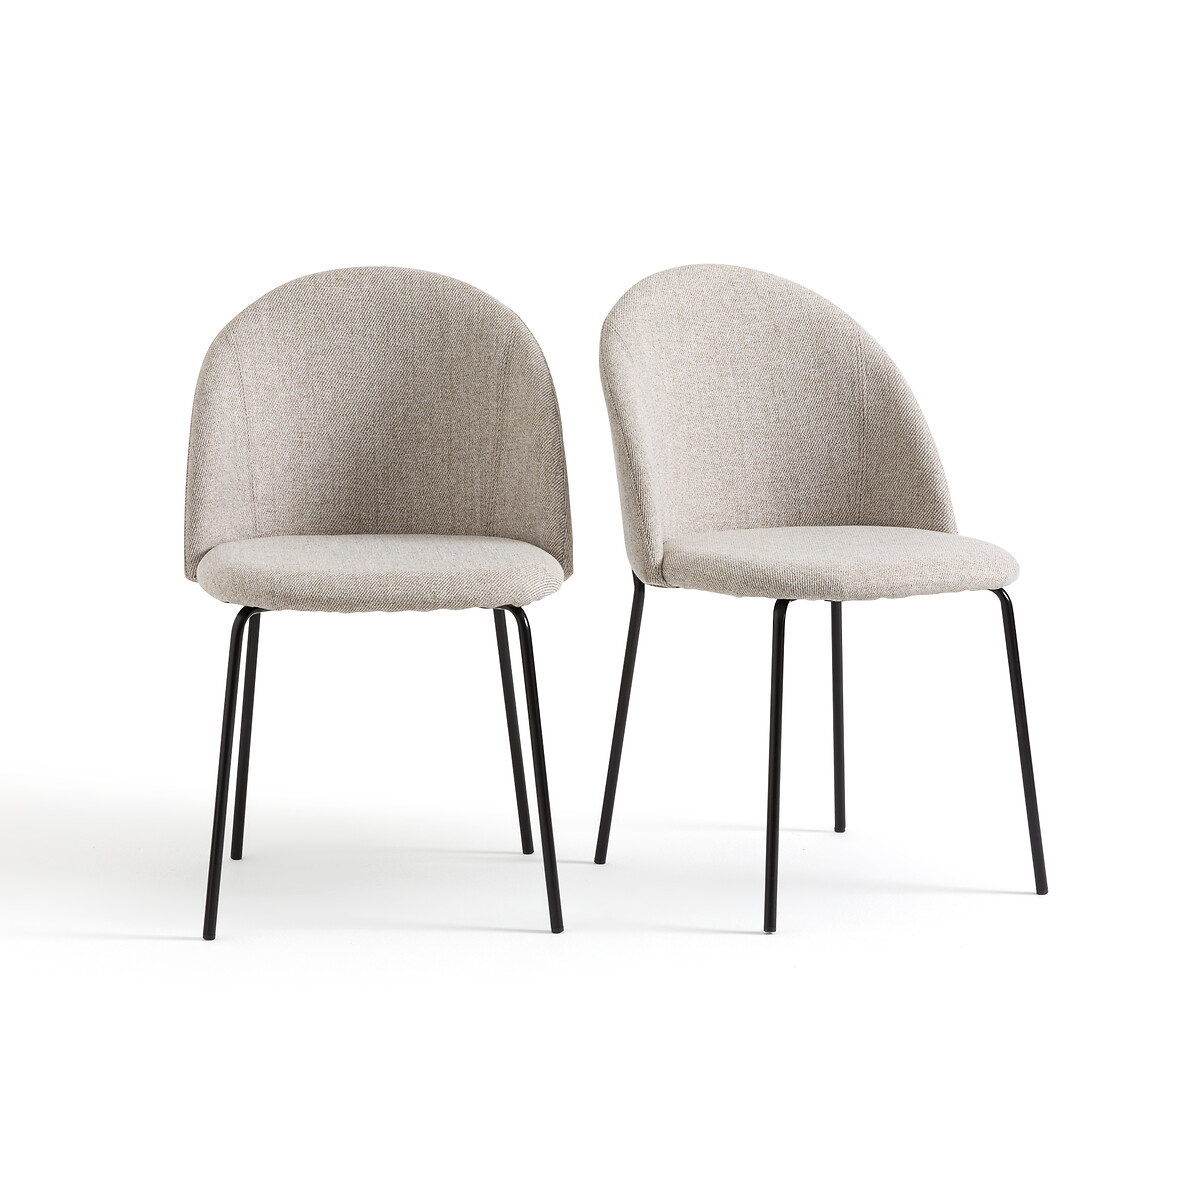 Комплект из двух стульев из ткани меланж Nordie единый размер бежевый комплект из двух велюровых стульев ins единый размер бежевый